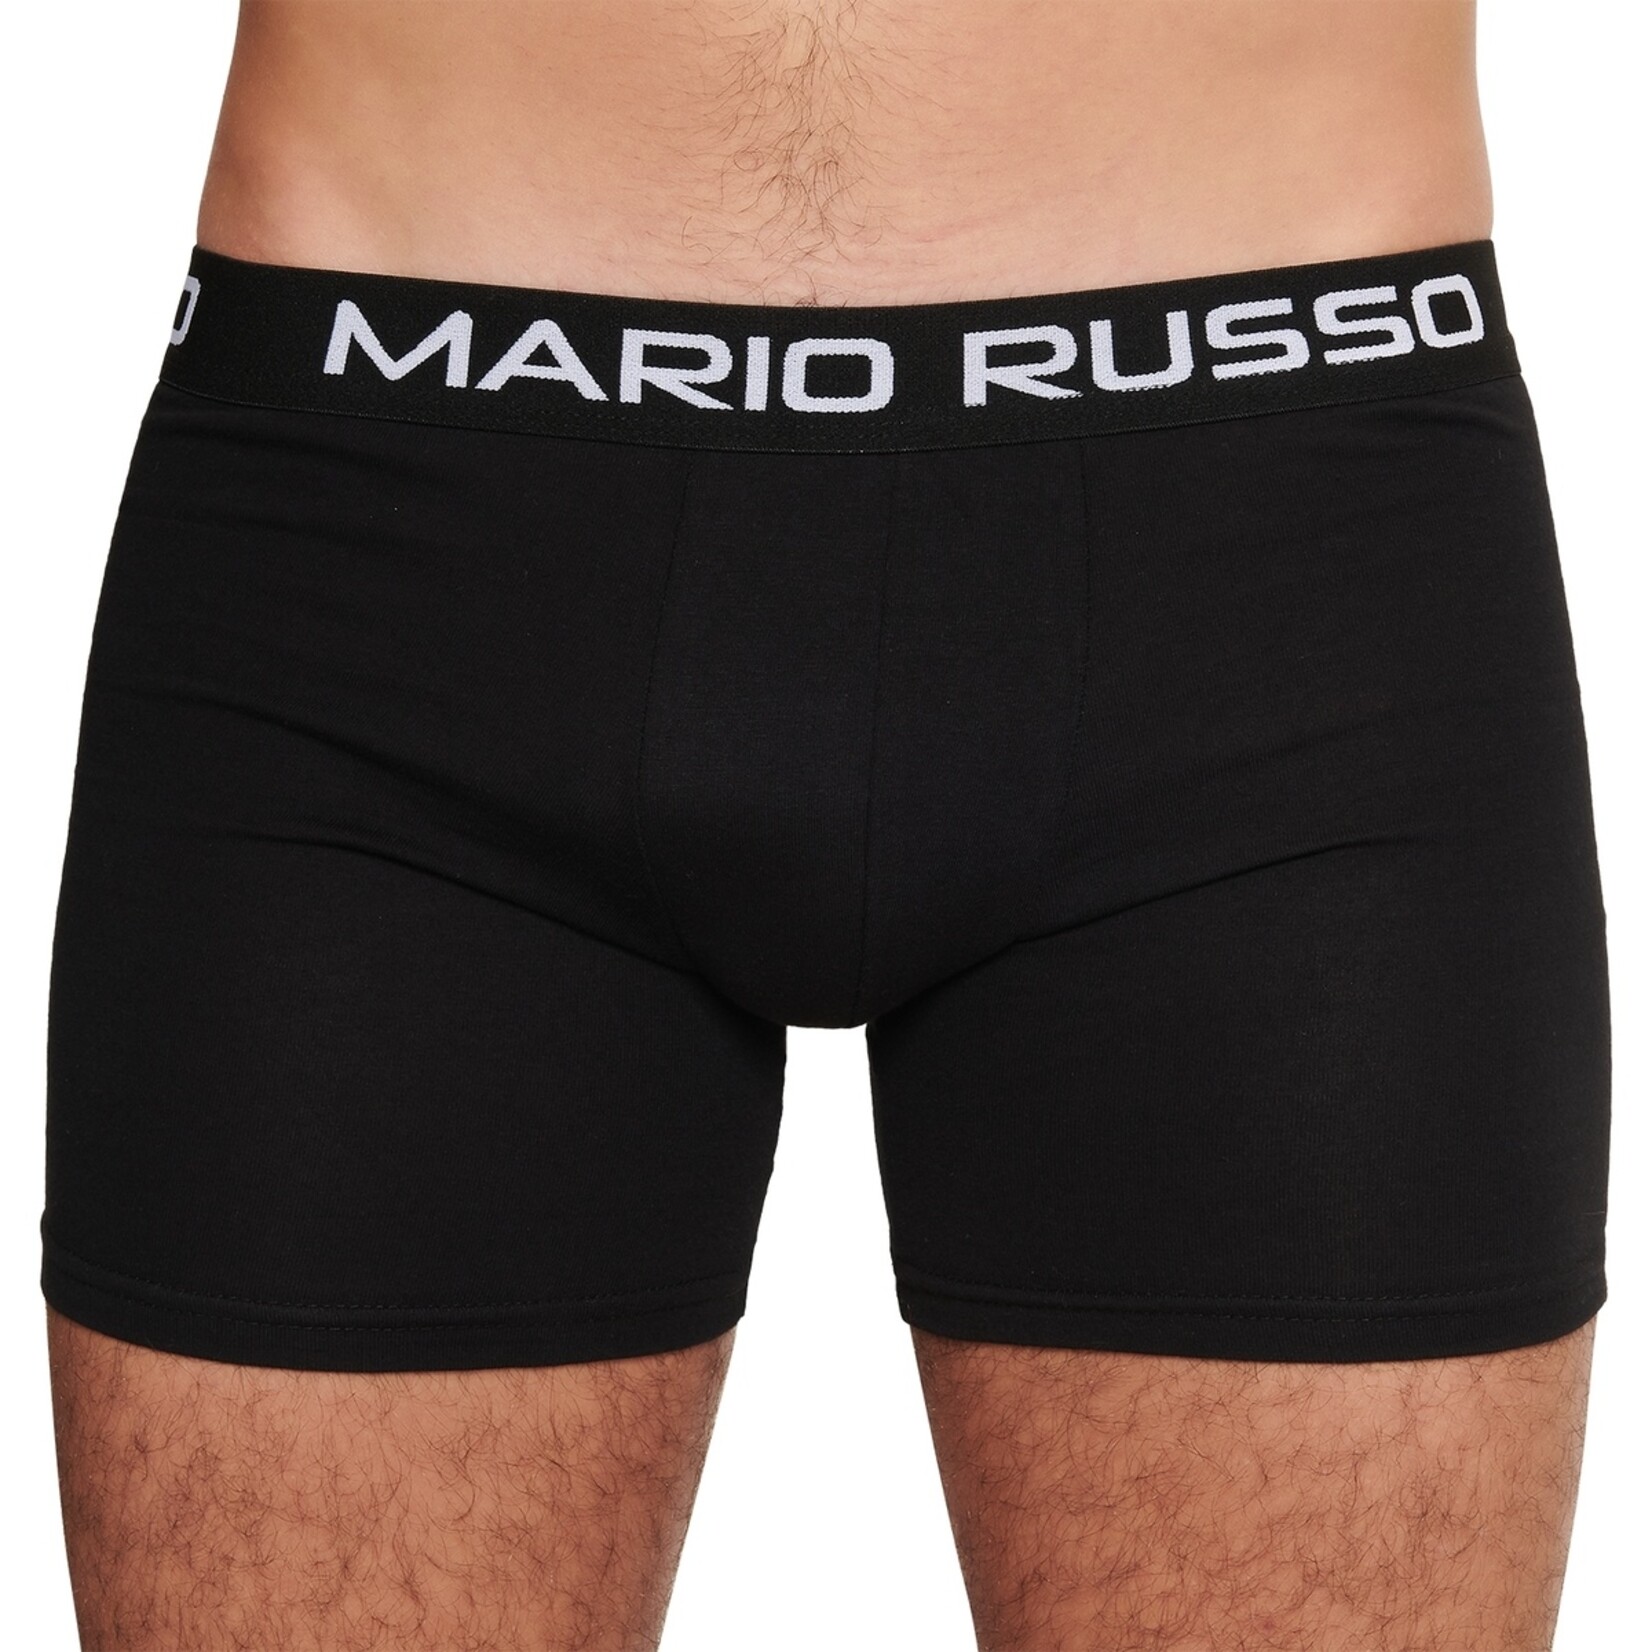 Mario Russo Mario Russo Boxershorts - Set van 10 Heren Boxers